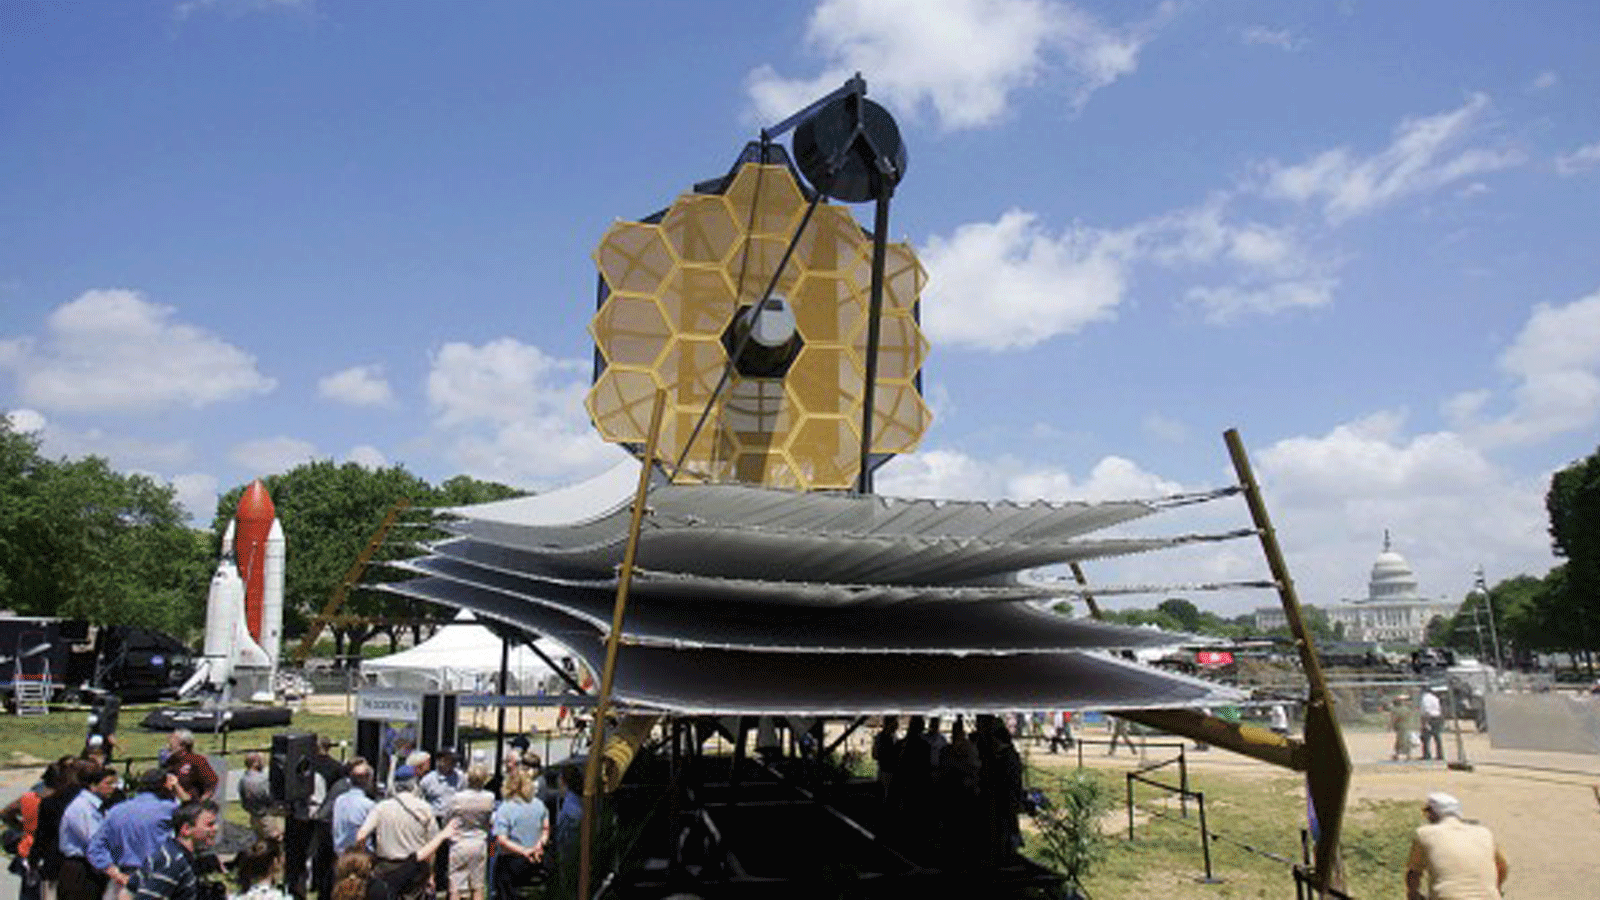  نموذج كامل الحجم لتلسكوب جيمس ويب الفضائي في ناشونال مول خارج متحف سميثسونيان للطيران والفضاء. في 10 أيار/مايو 2007، في واشنطن العاصمة.